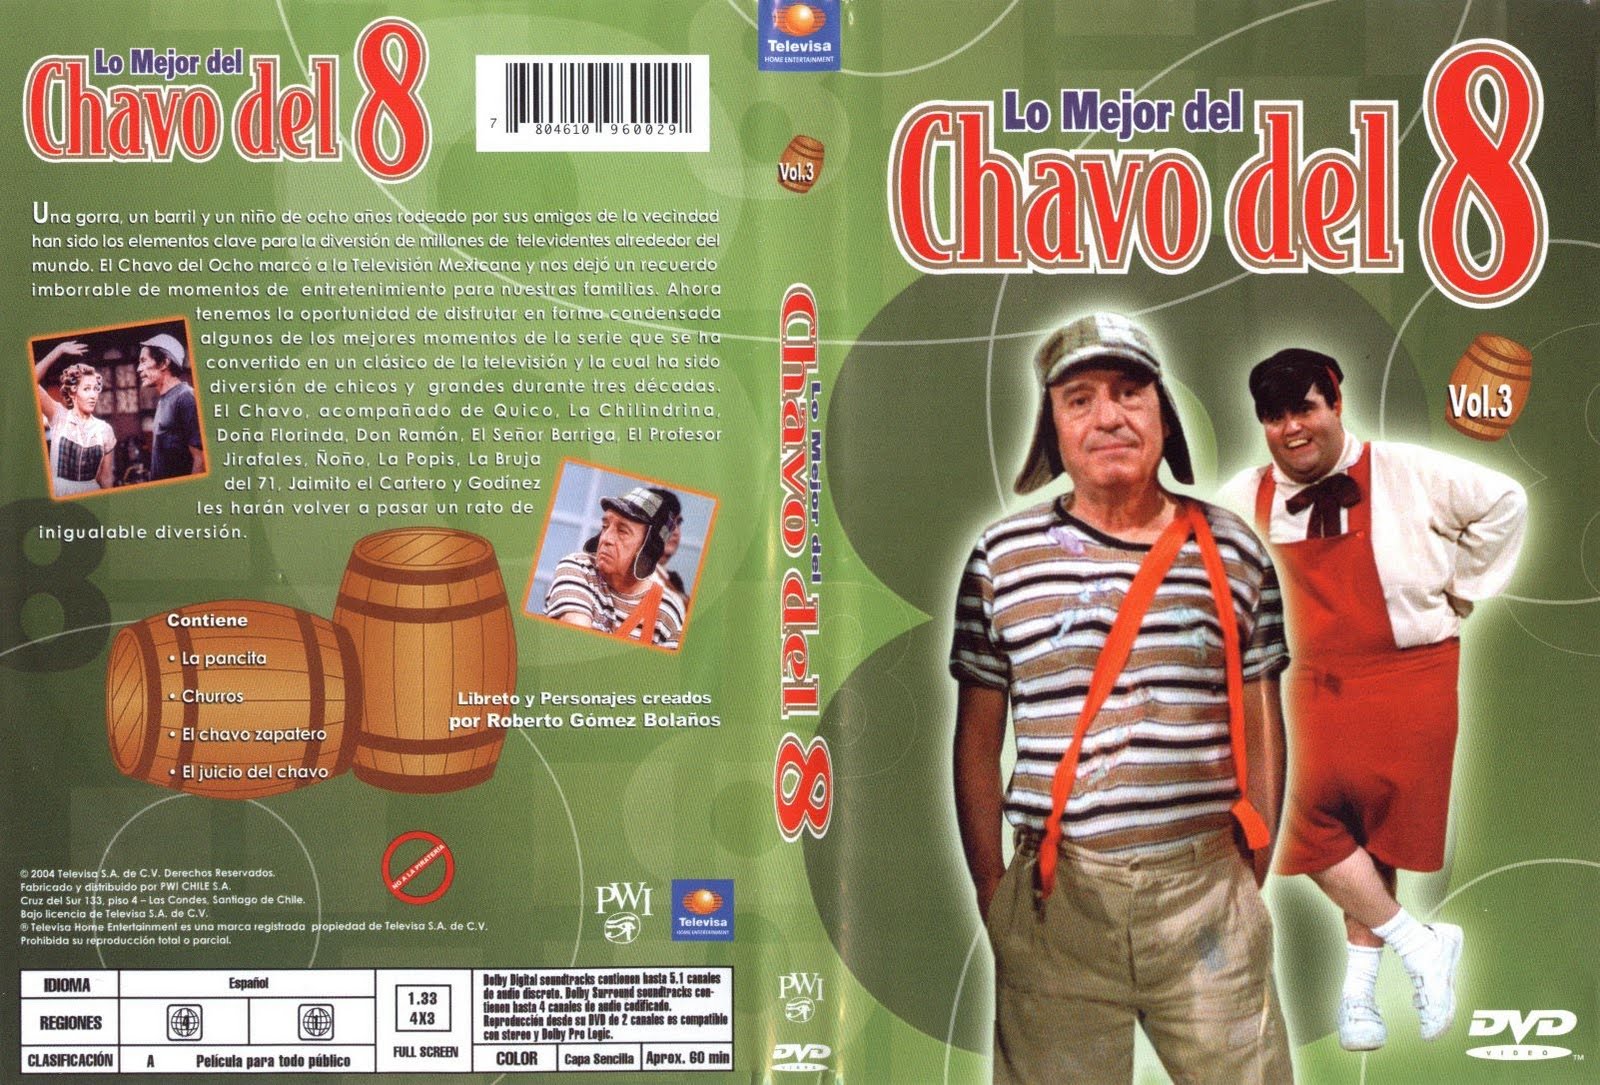 Lo Mejor del Chavo del 8, Vol. 3 movie download.